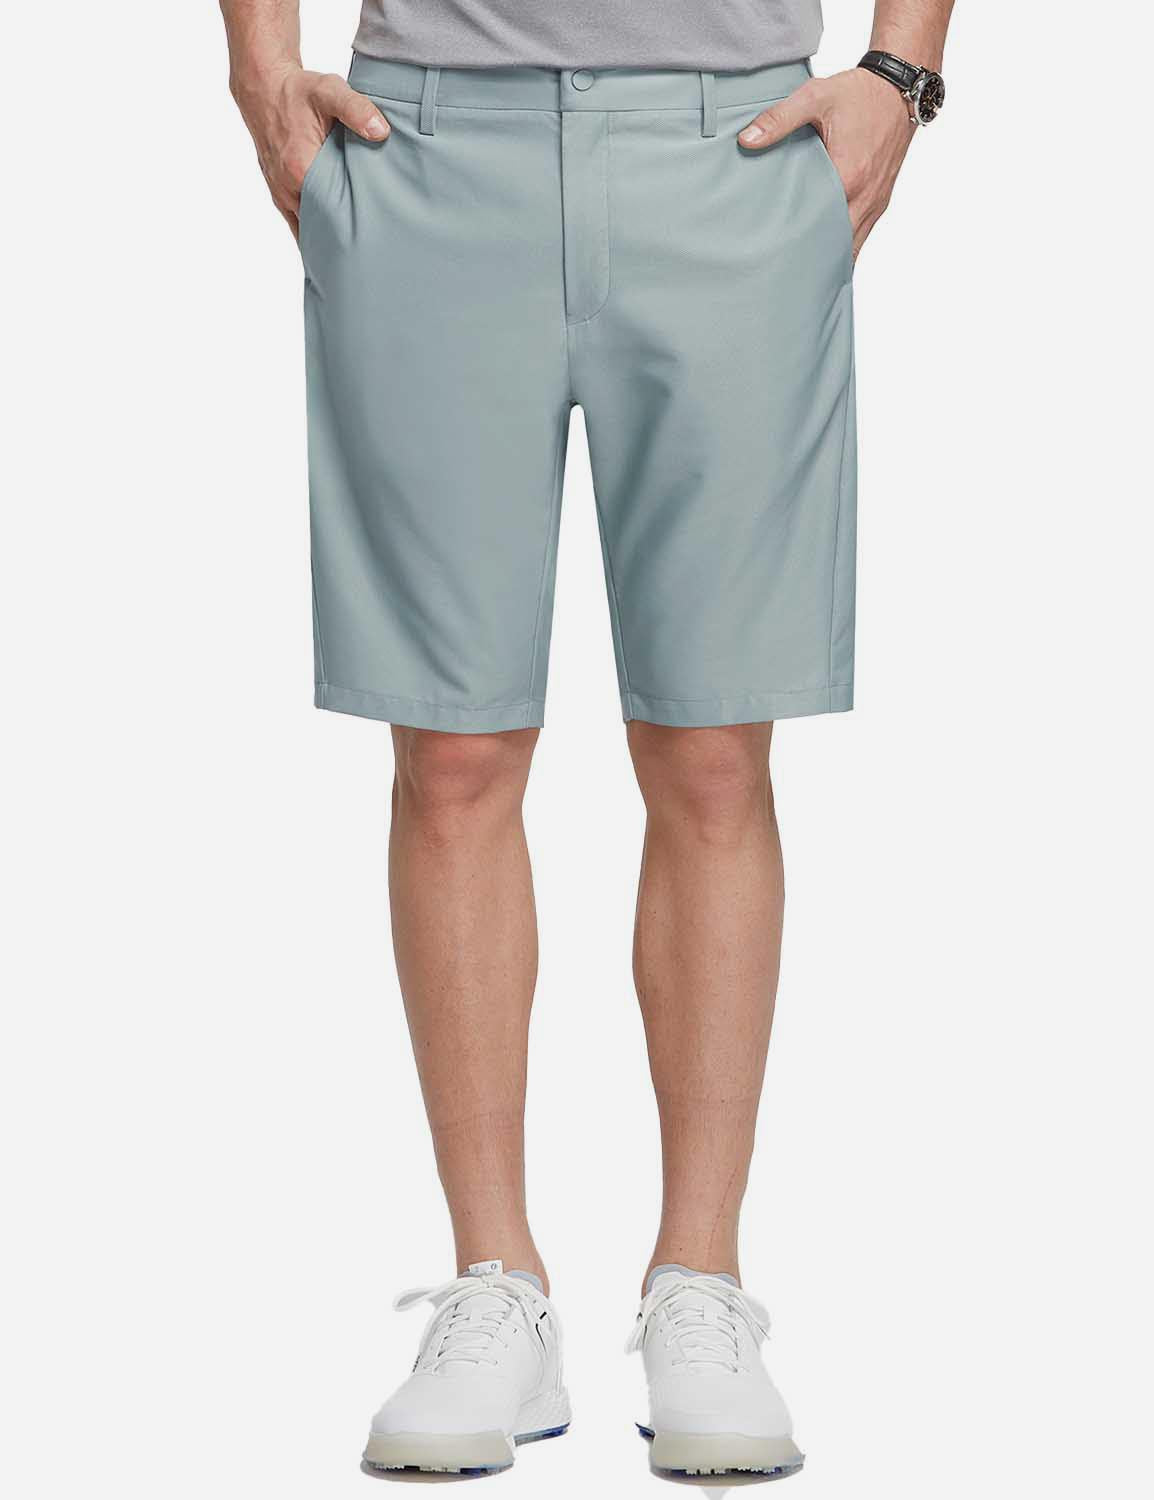 Baleaf Men's 10' UPF 50+ Lightweight Golf Shorts w Zipper Pockets cga005 Blue Front